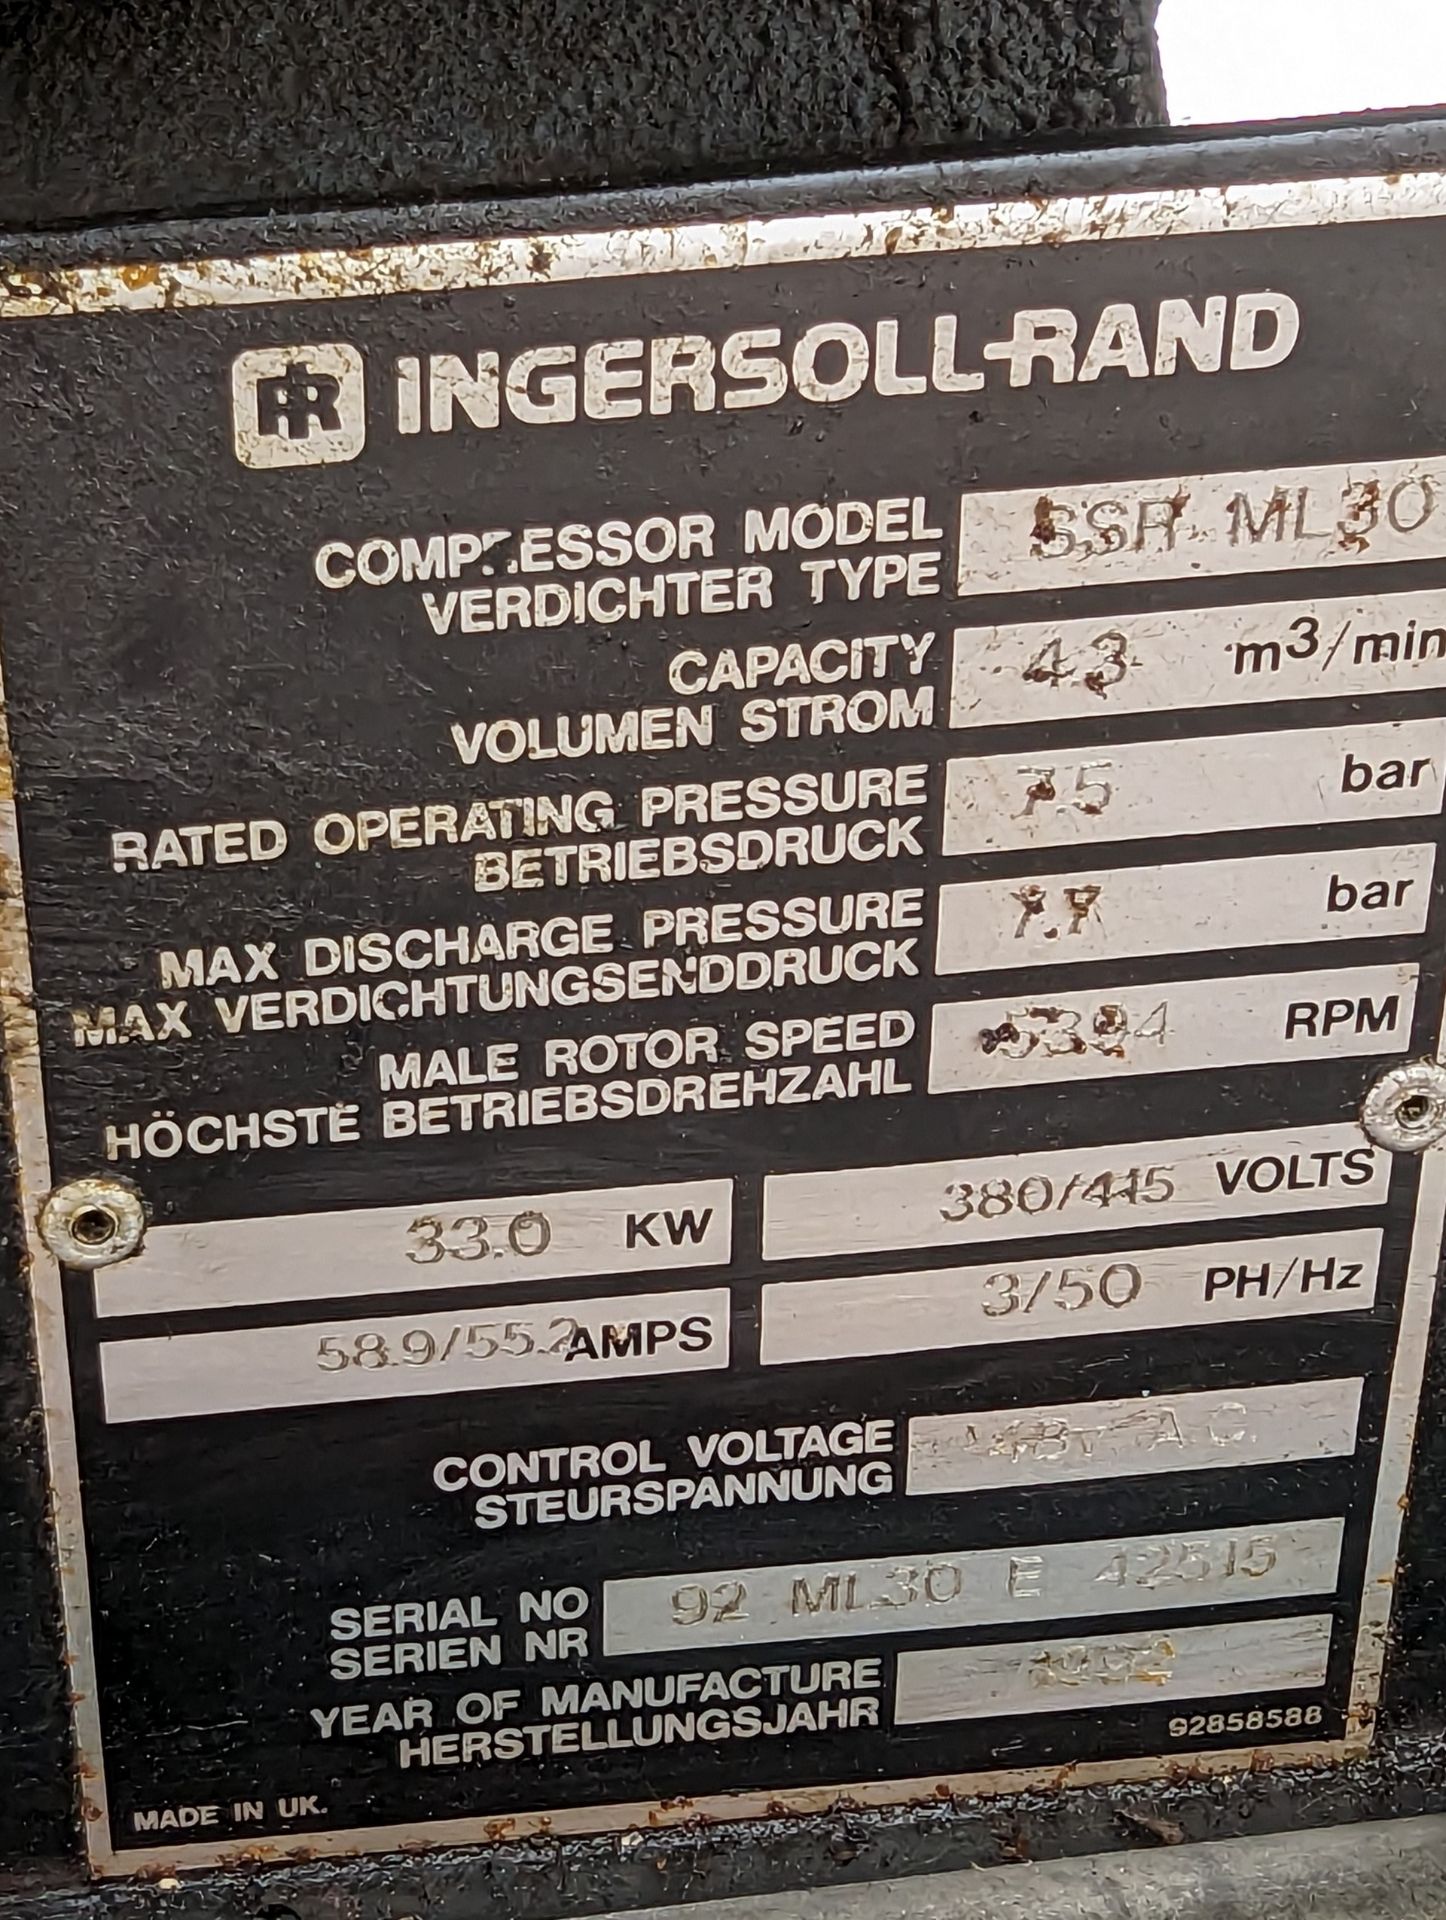 SSR ML 30 Ingersoll Rand Compressor,in working order - Bild 5 aus 6